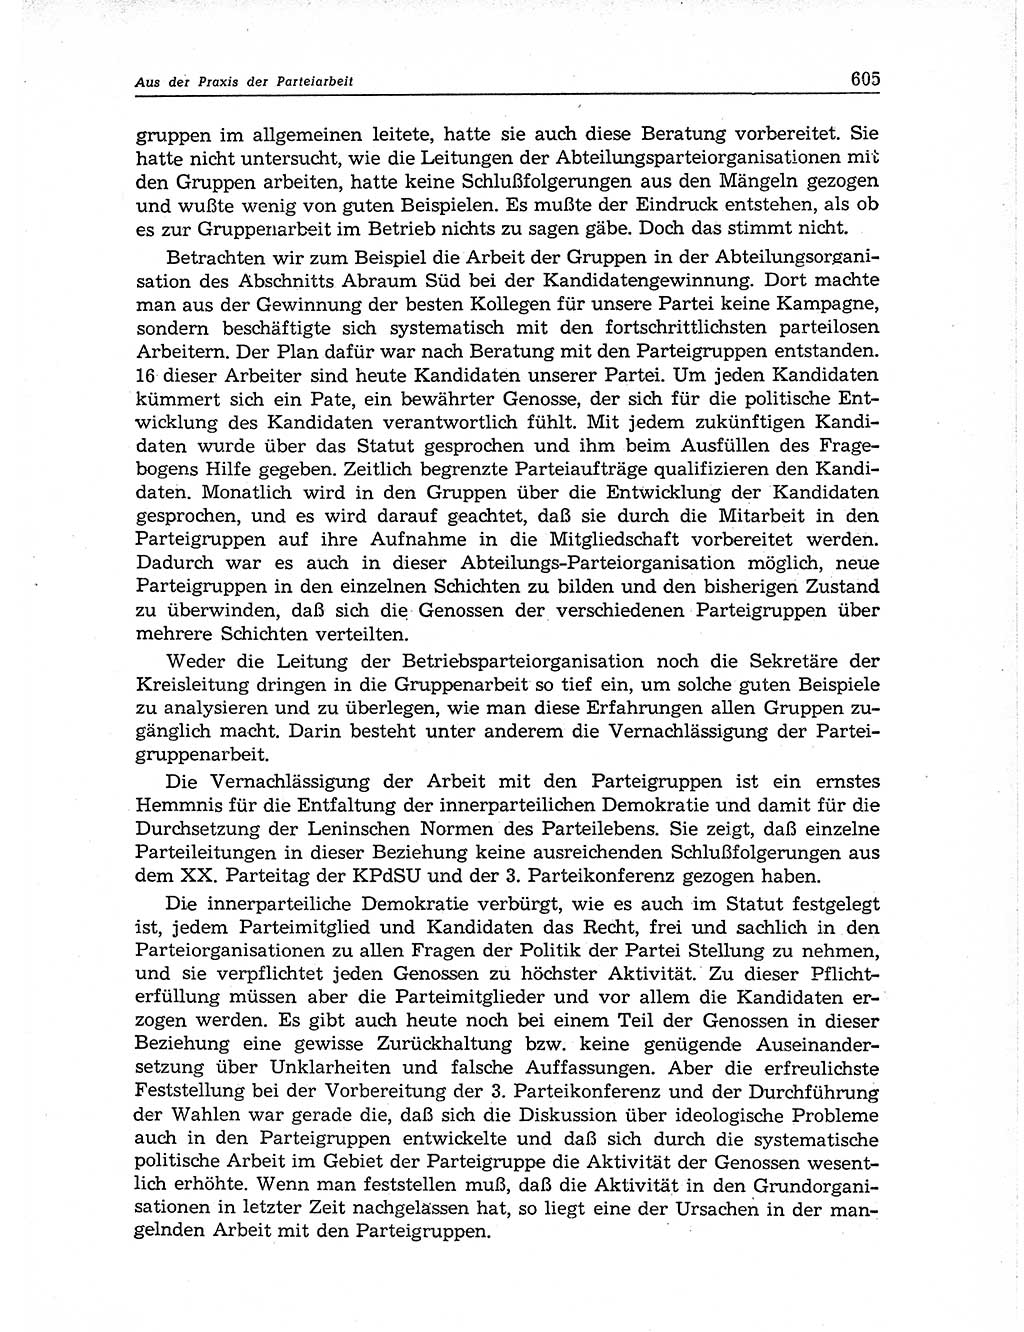 Neuer Weg (NW), Organ des Zentralkomitees (ZK) der SED (Sozialistische Einheitspartei Deutschlands) für Fragen des Parteiaufbaus und des Parteilebens, 11. Jahrgang [Deutsche Demokratische Republik (DDR)] 1956, Seite 605 (NW ZK SED DDR 1956, S. 605)